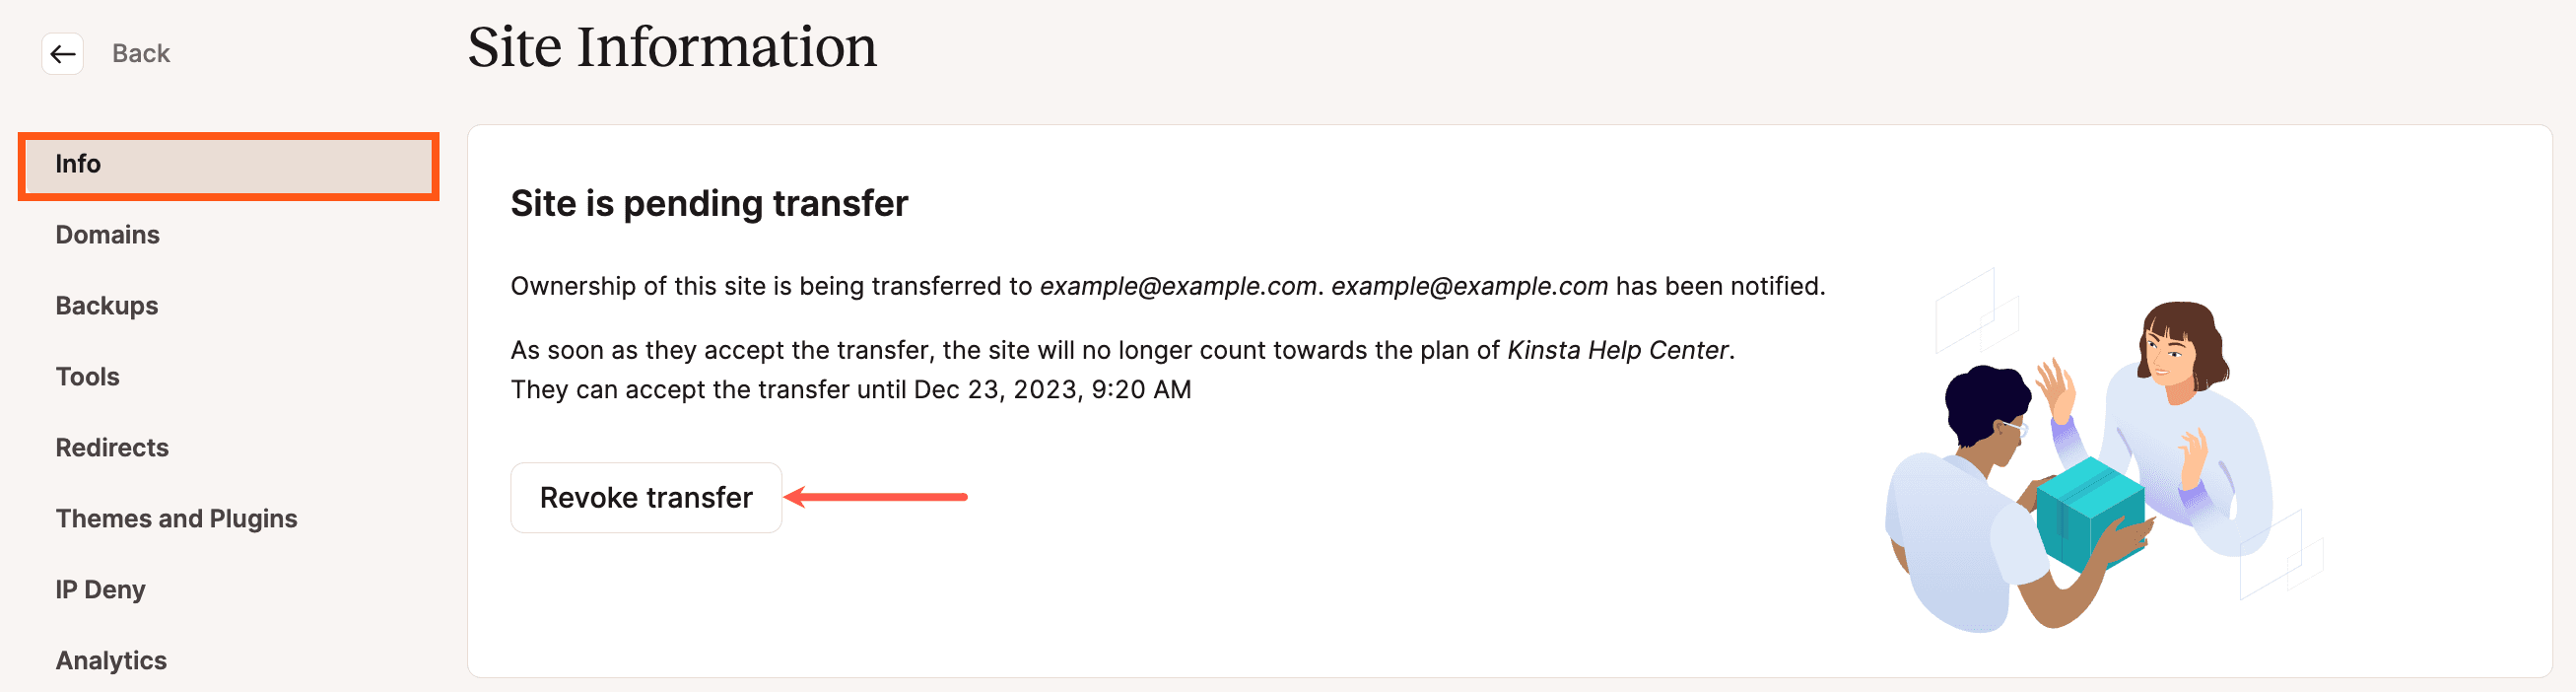 Cancelar/revocar la transferencia de un sitio en MyKinsta.